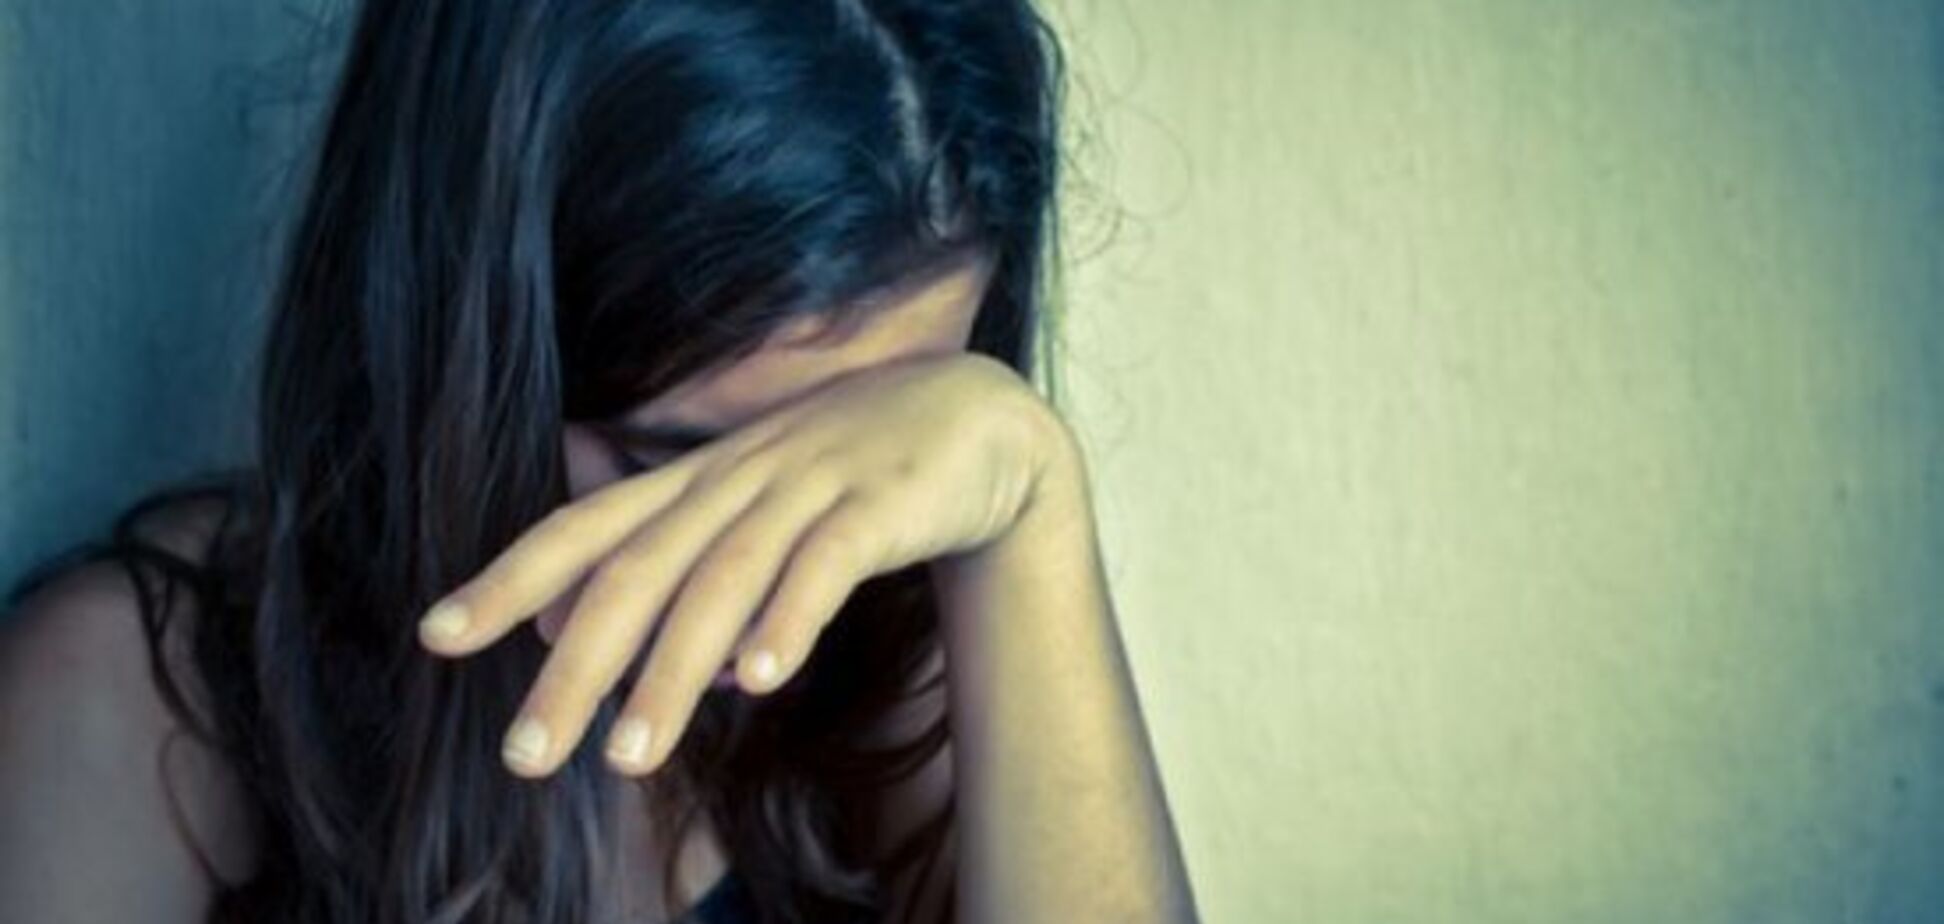 П'ять нелюдів зґвалтували школярку: в Росії сталася страшна НП